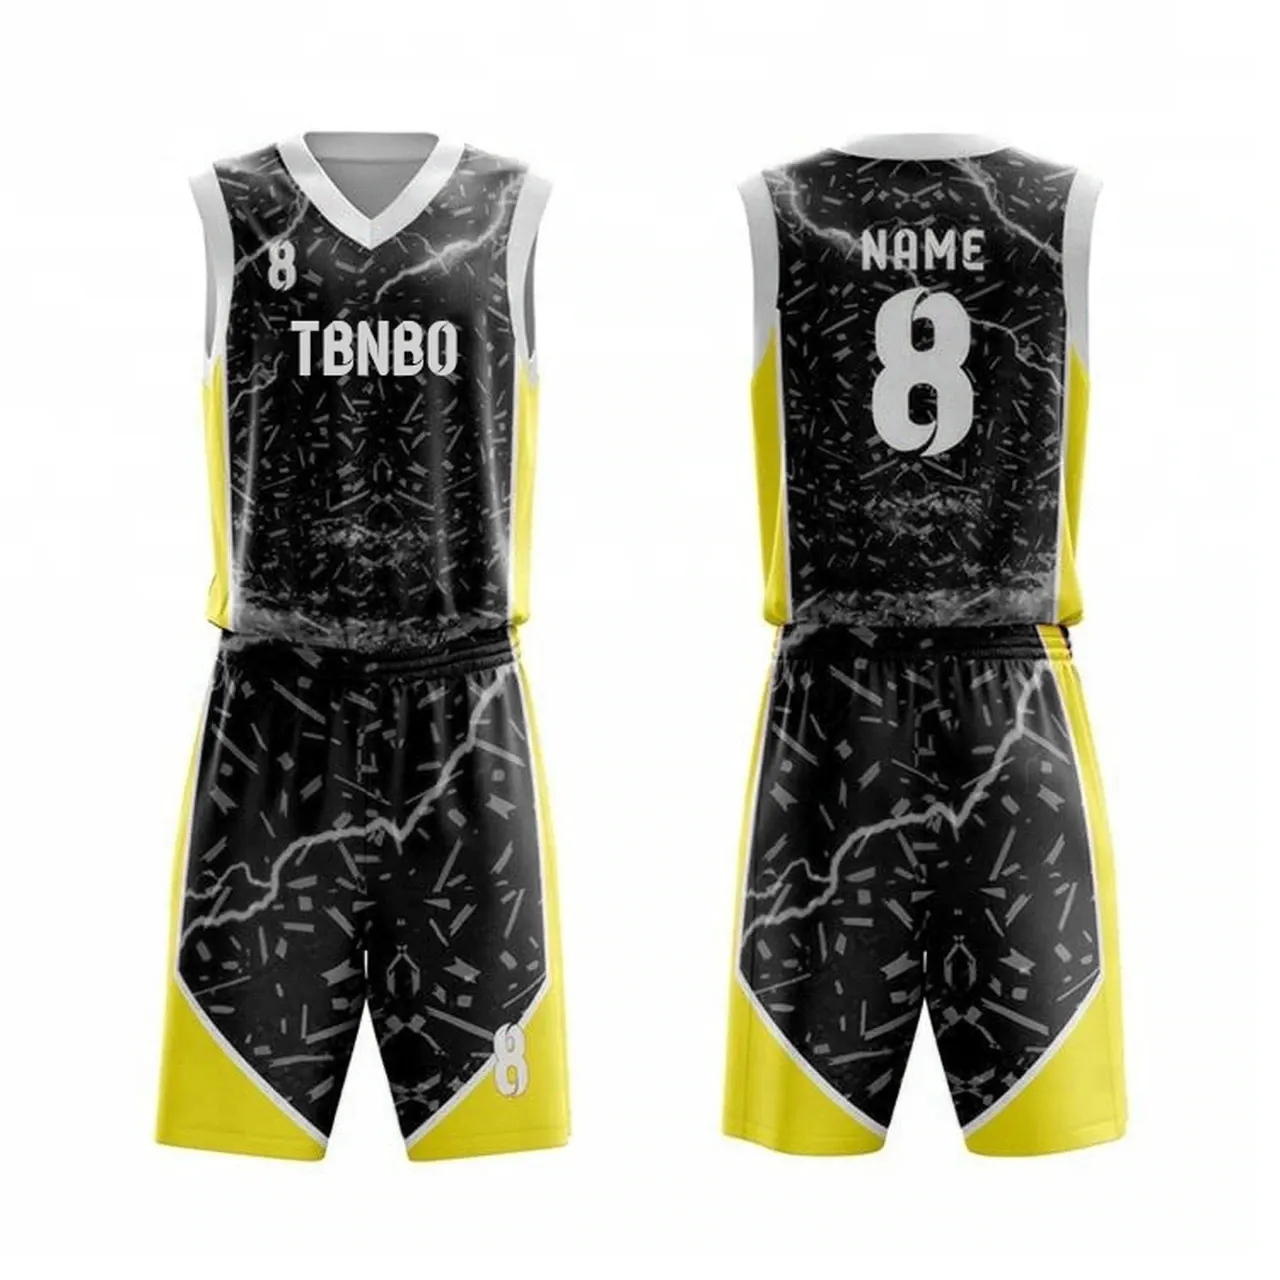 Uniforme de basquete exclusivo para basquete, serviço de impressão digital por sublimação completa com design de camisa de basquete